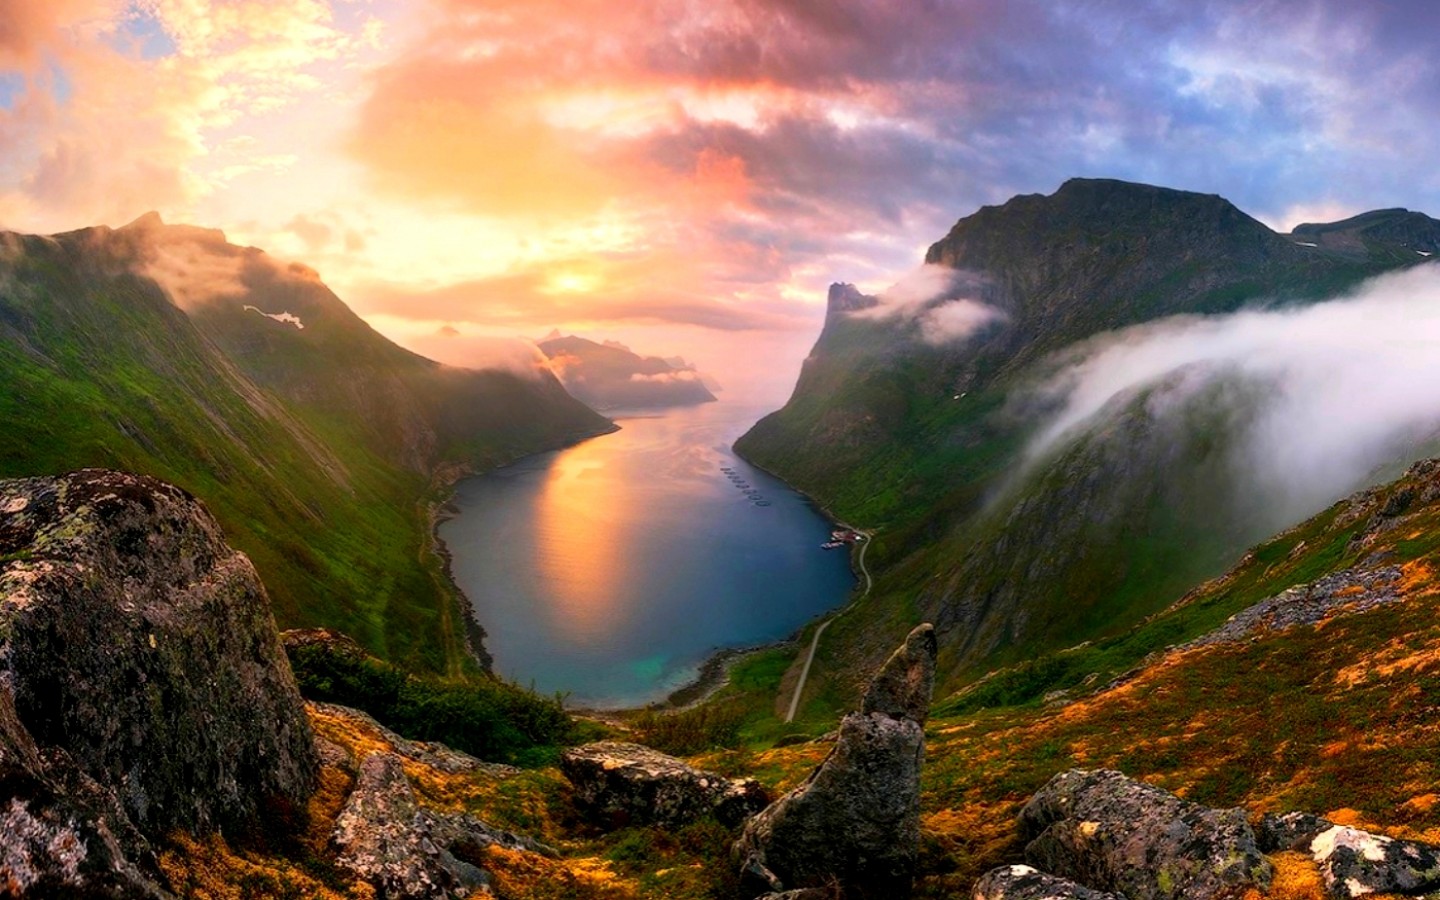 The view is beautiful. Фьорды Норвегии. Остров Сенья Норвегия. Норвегия пейзажи фьорды. Коржонов Дагестан.